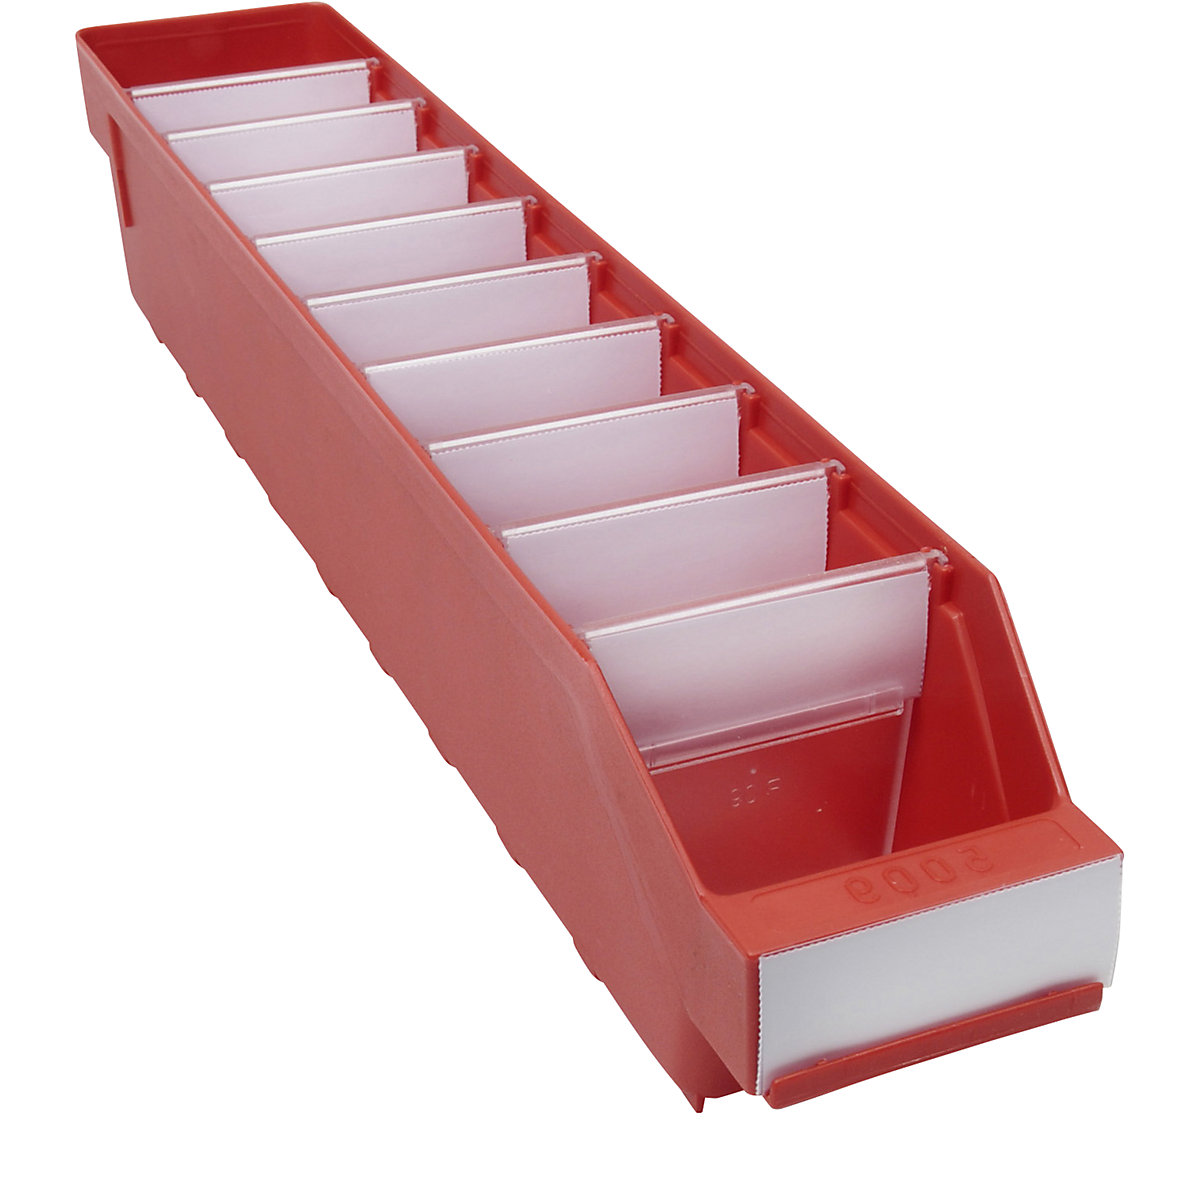 Regalkasten aus hochschlagfestem Polypropylen STEMO, rot, LxBxH 500 x 90 x 95 mm, VE 40 Stk-11